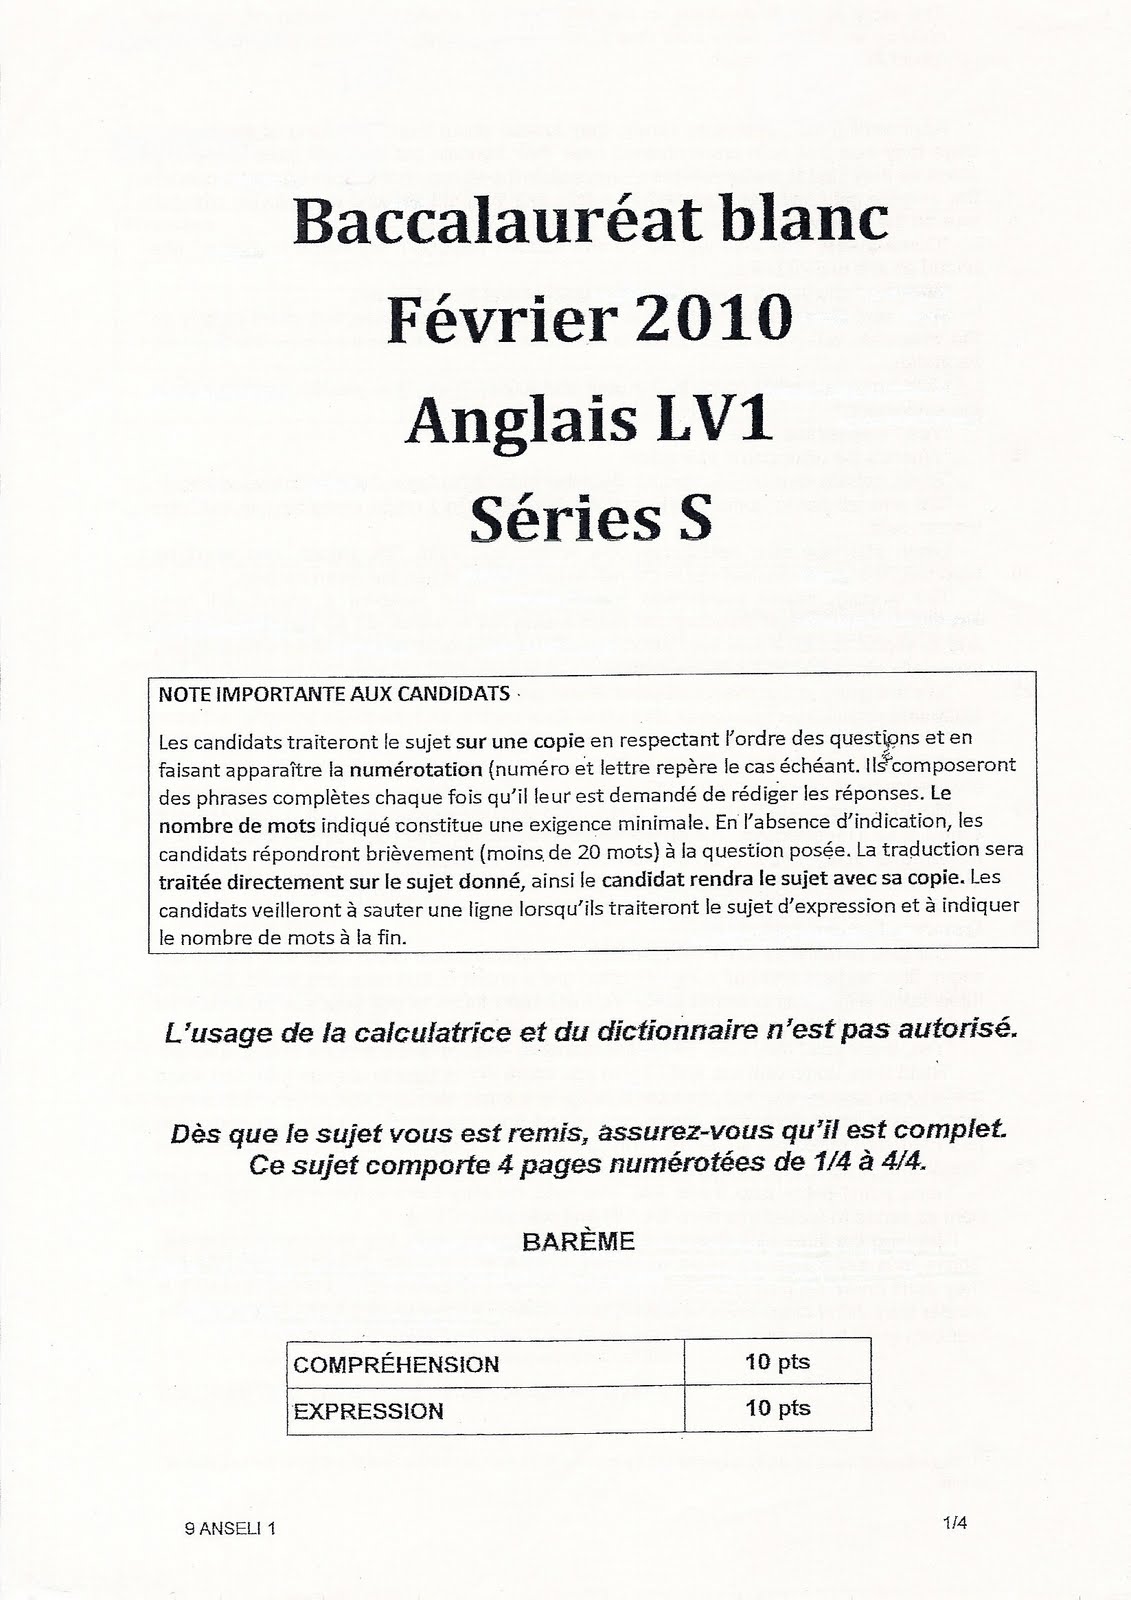 Sujet 0 Llcer Anglais Terminale Corrigé Avis aux futur(e)s stréssé(e)s (ou non) !: anglais - bac blanc - 02/10